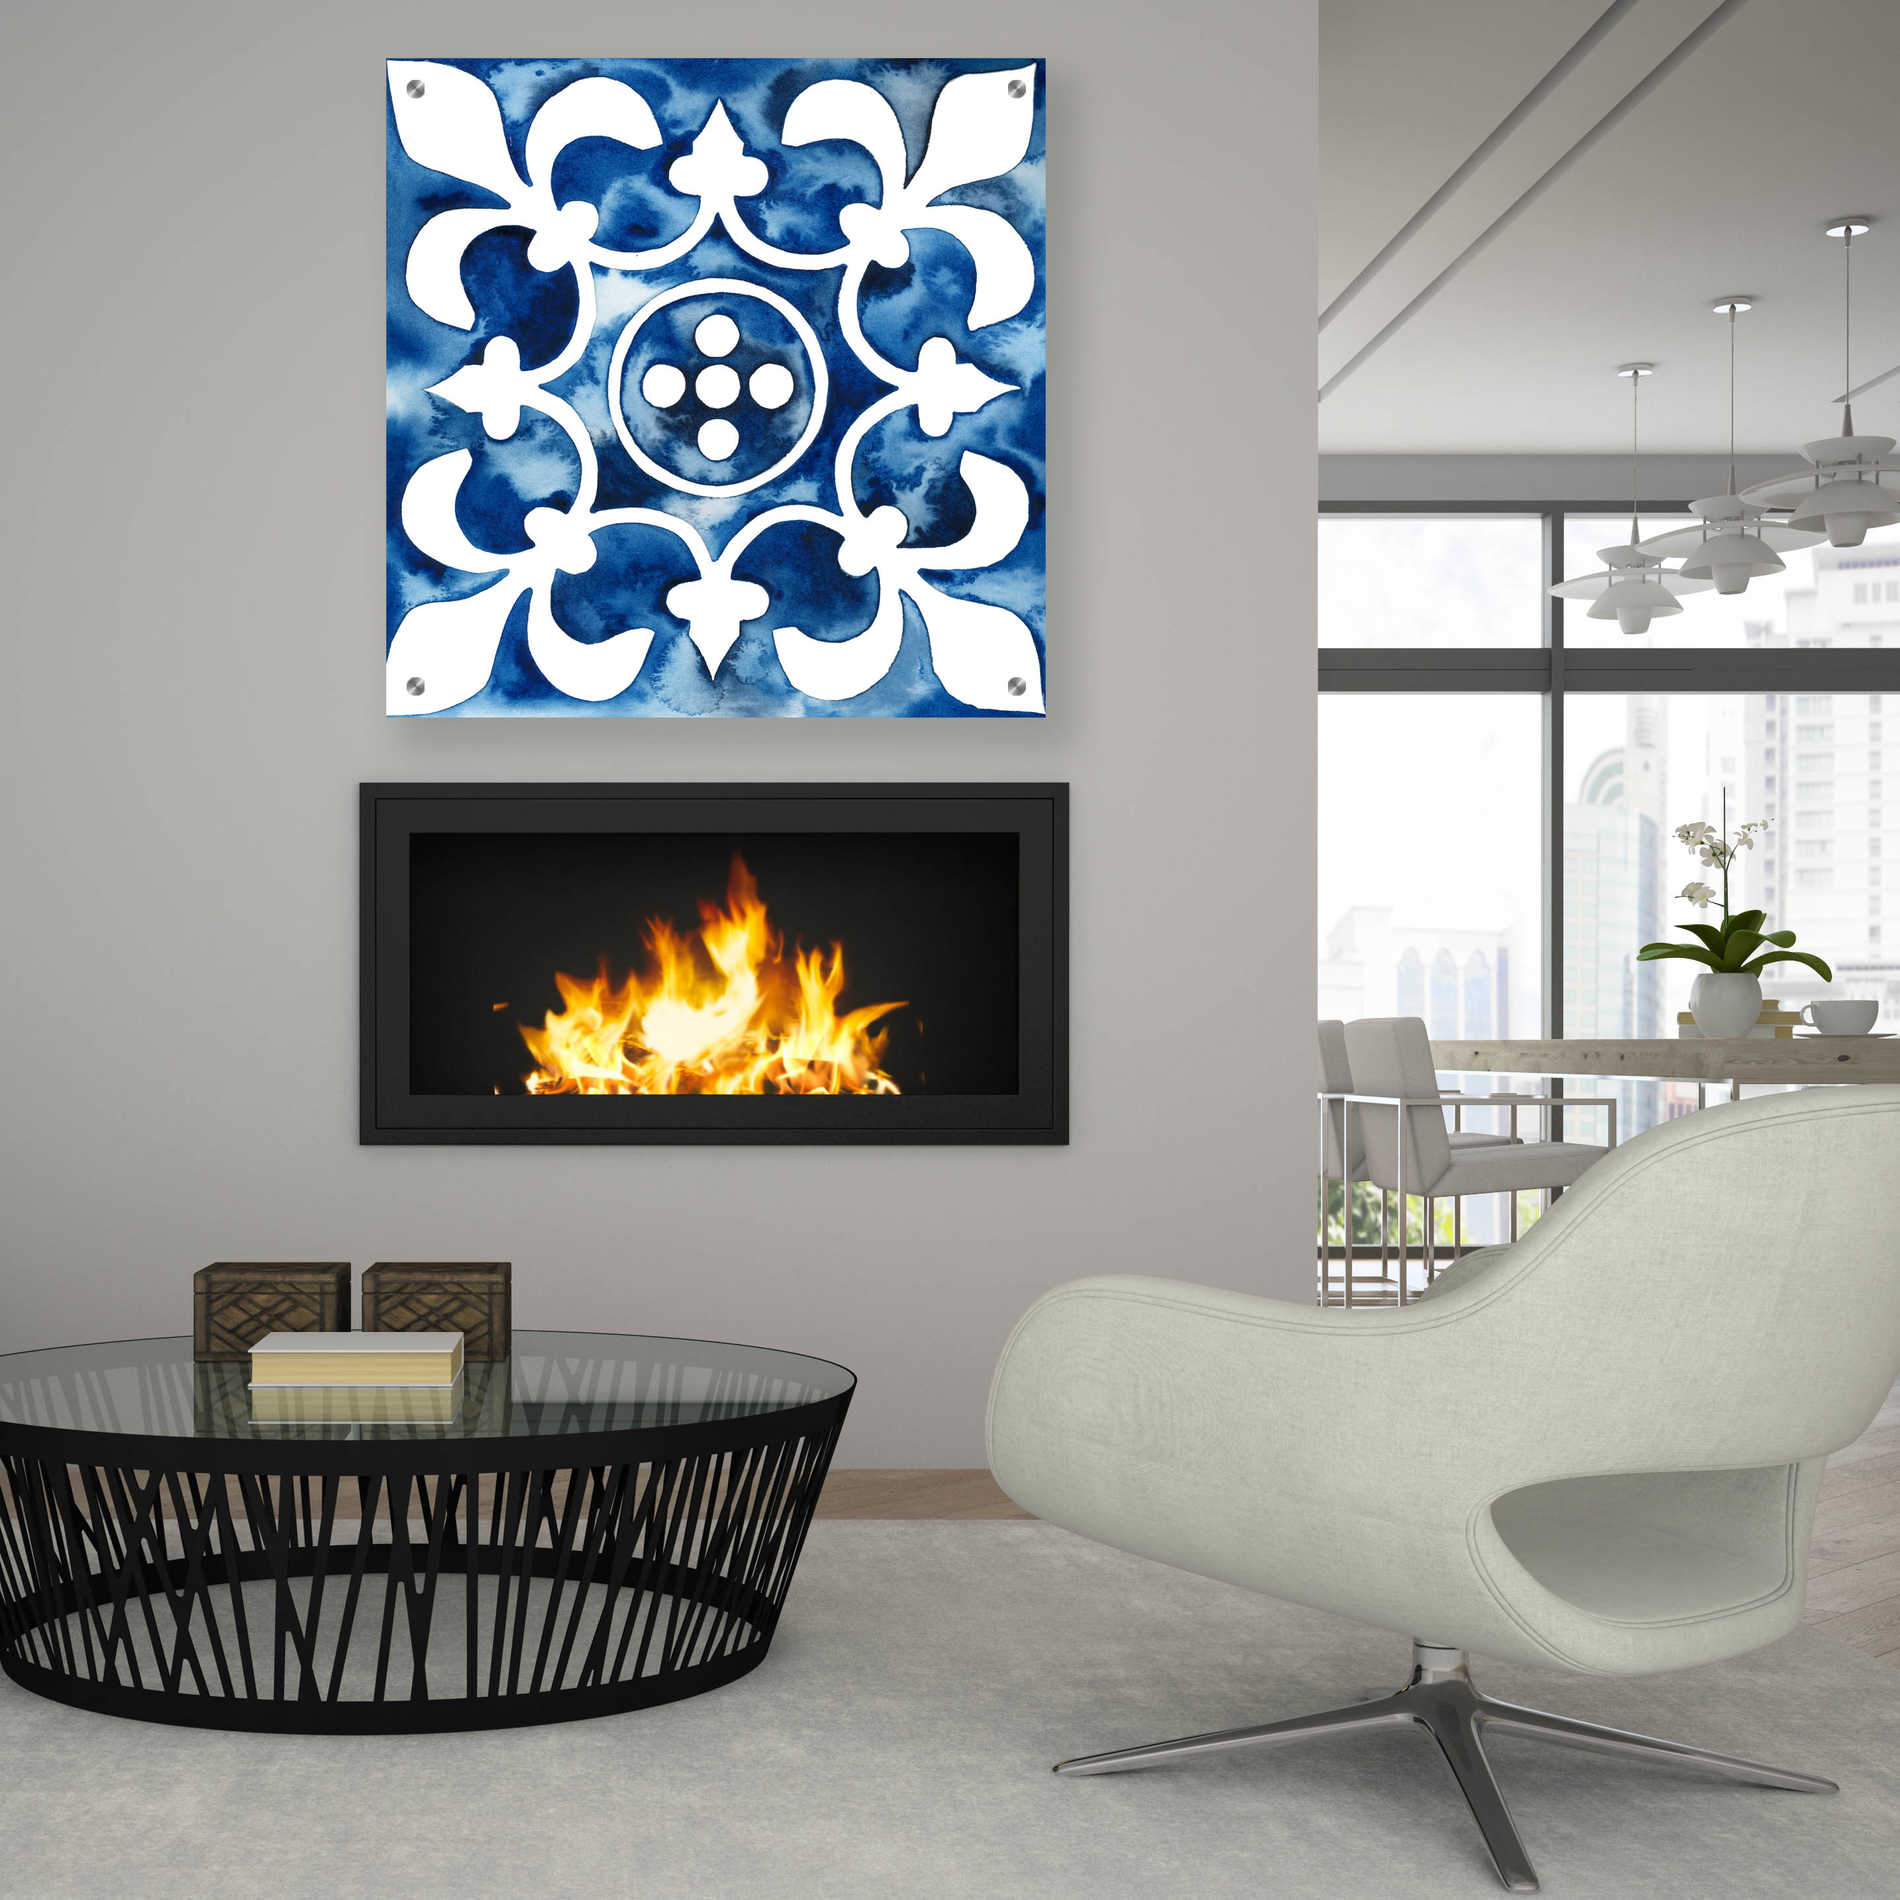 Epic Art 'Cobalt Tile III' by Grace Popp, Acrylic Glass Wall Art,36x36